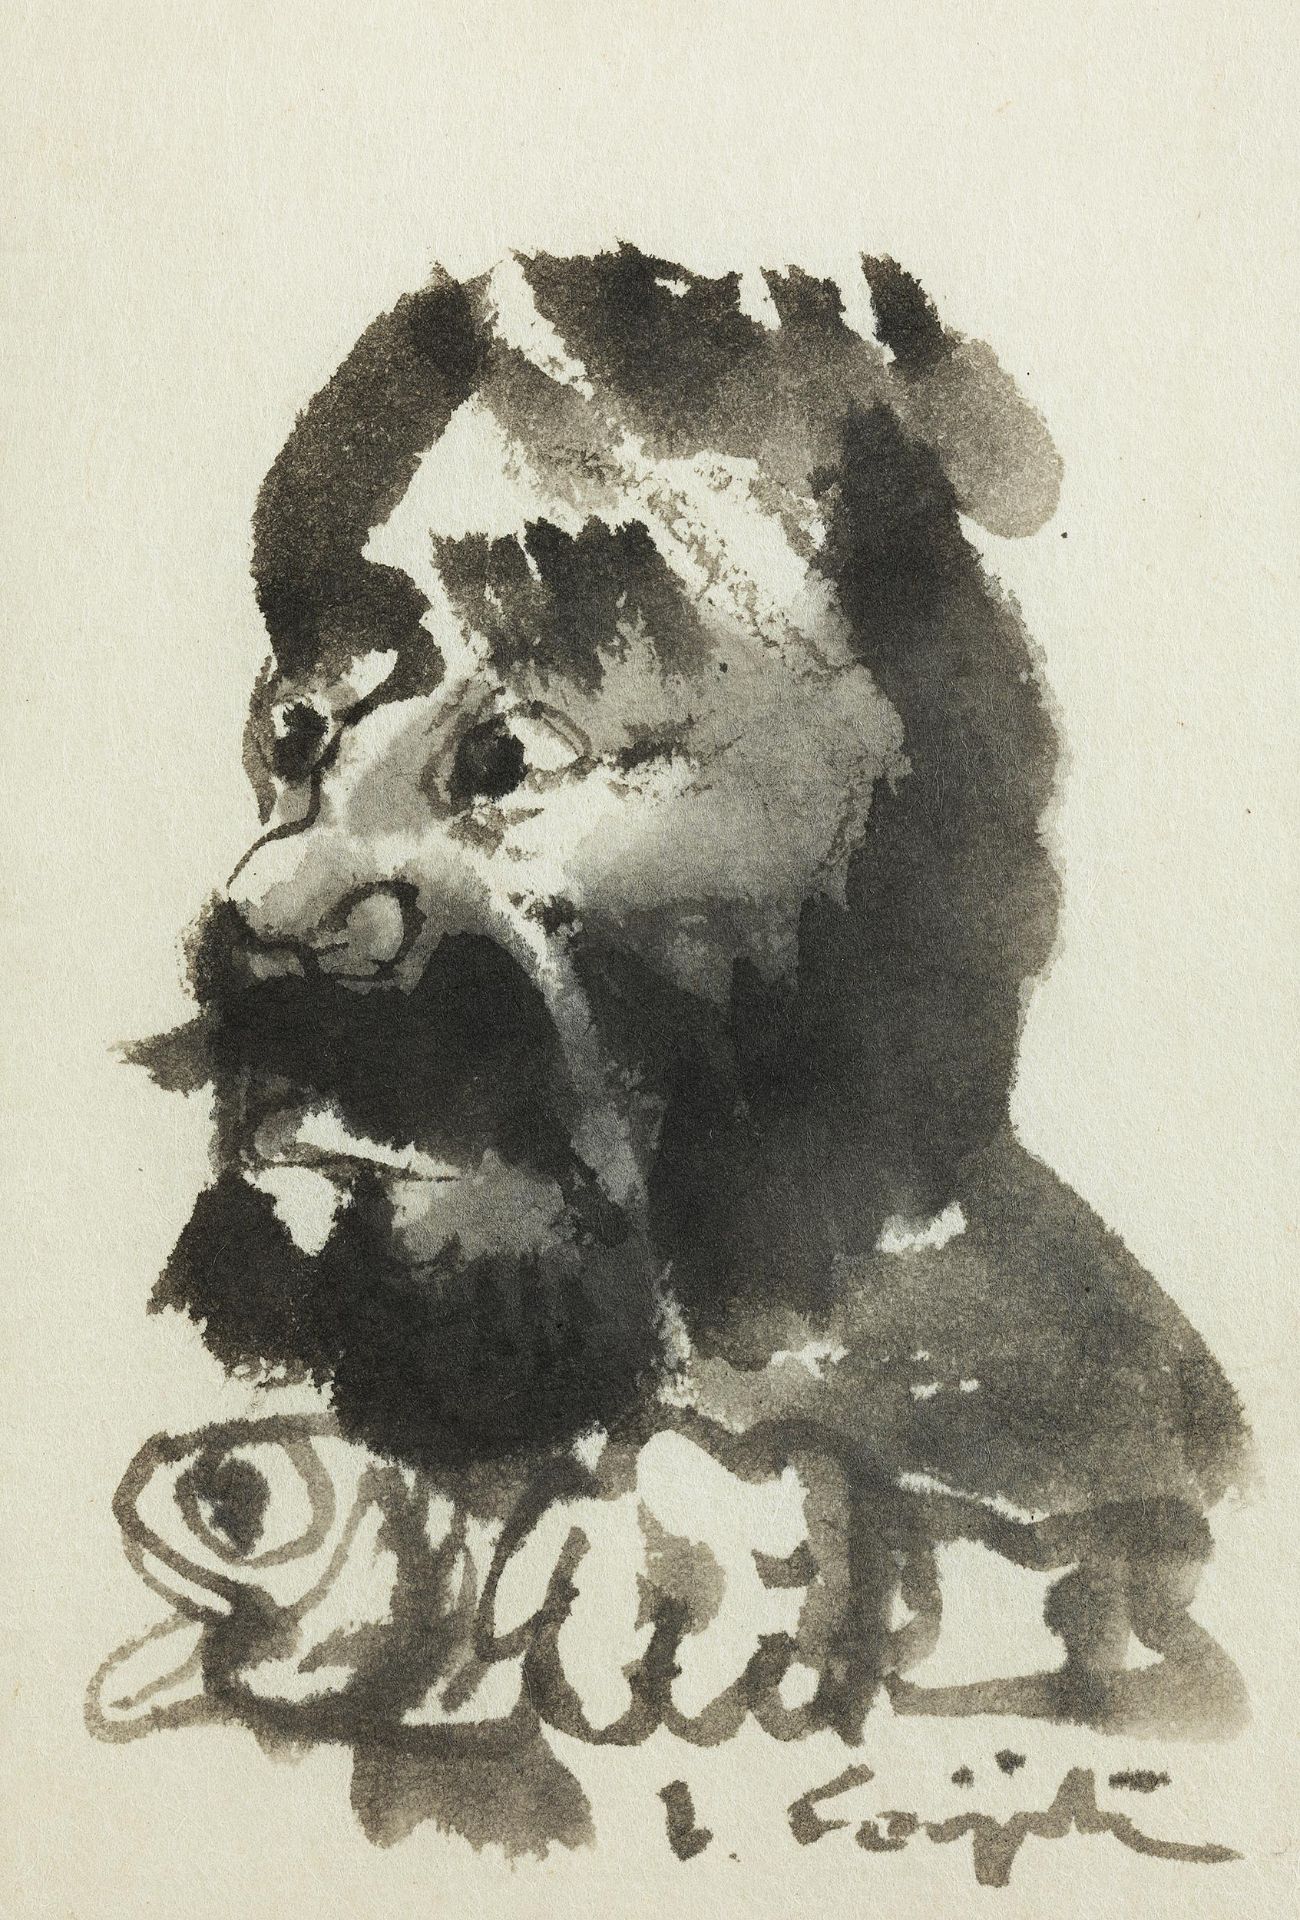 Léonard Tsuguharu Foujita, 1886 Tokyo – 1968 Zürich,